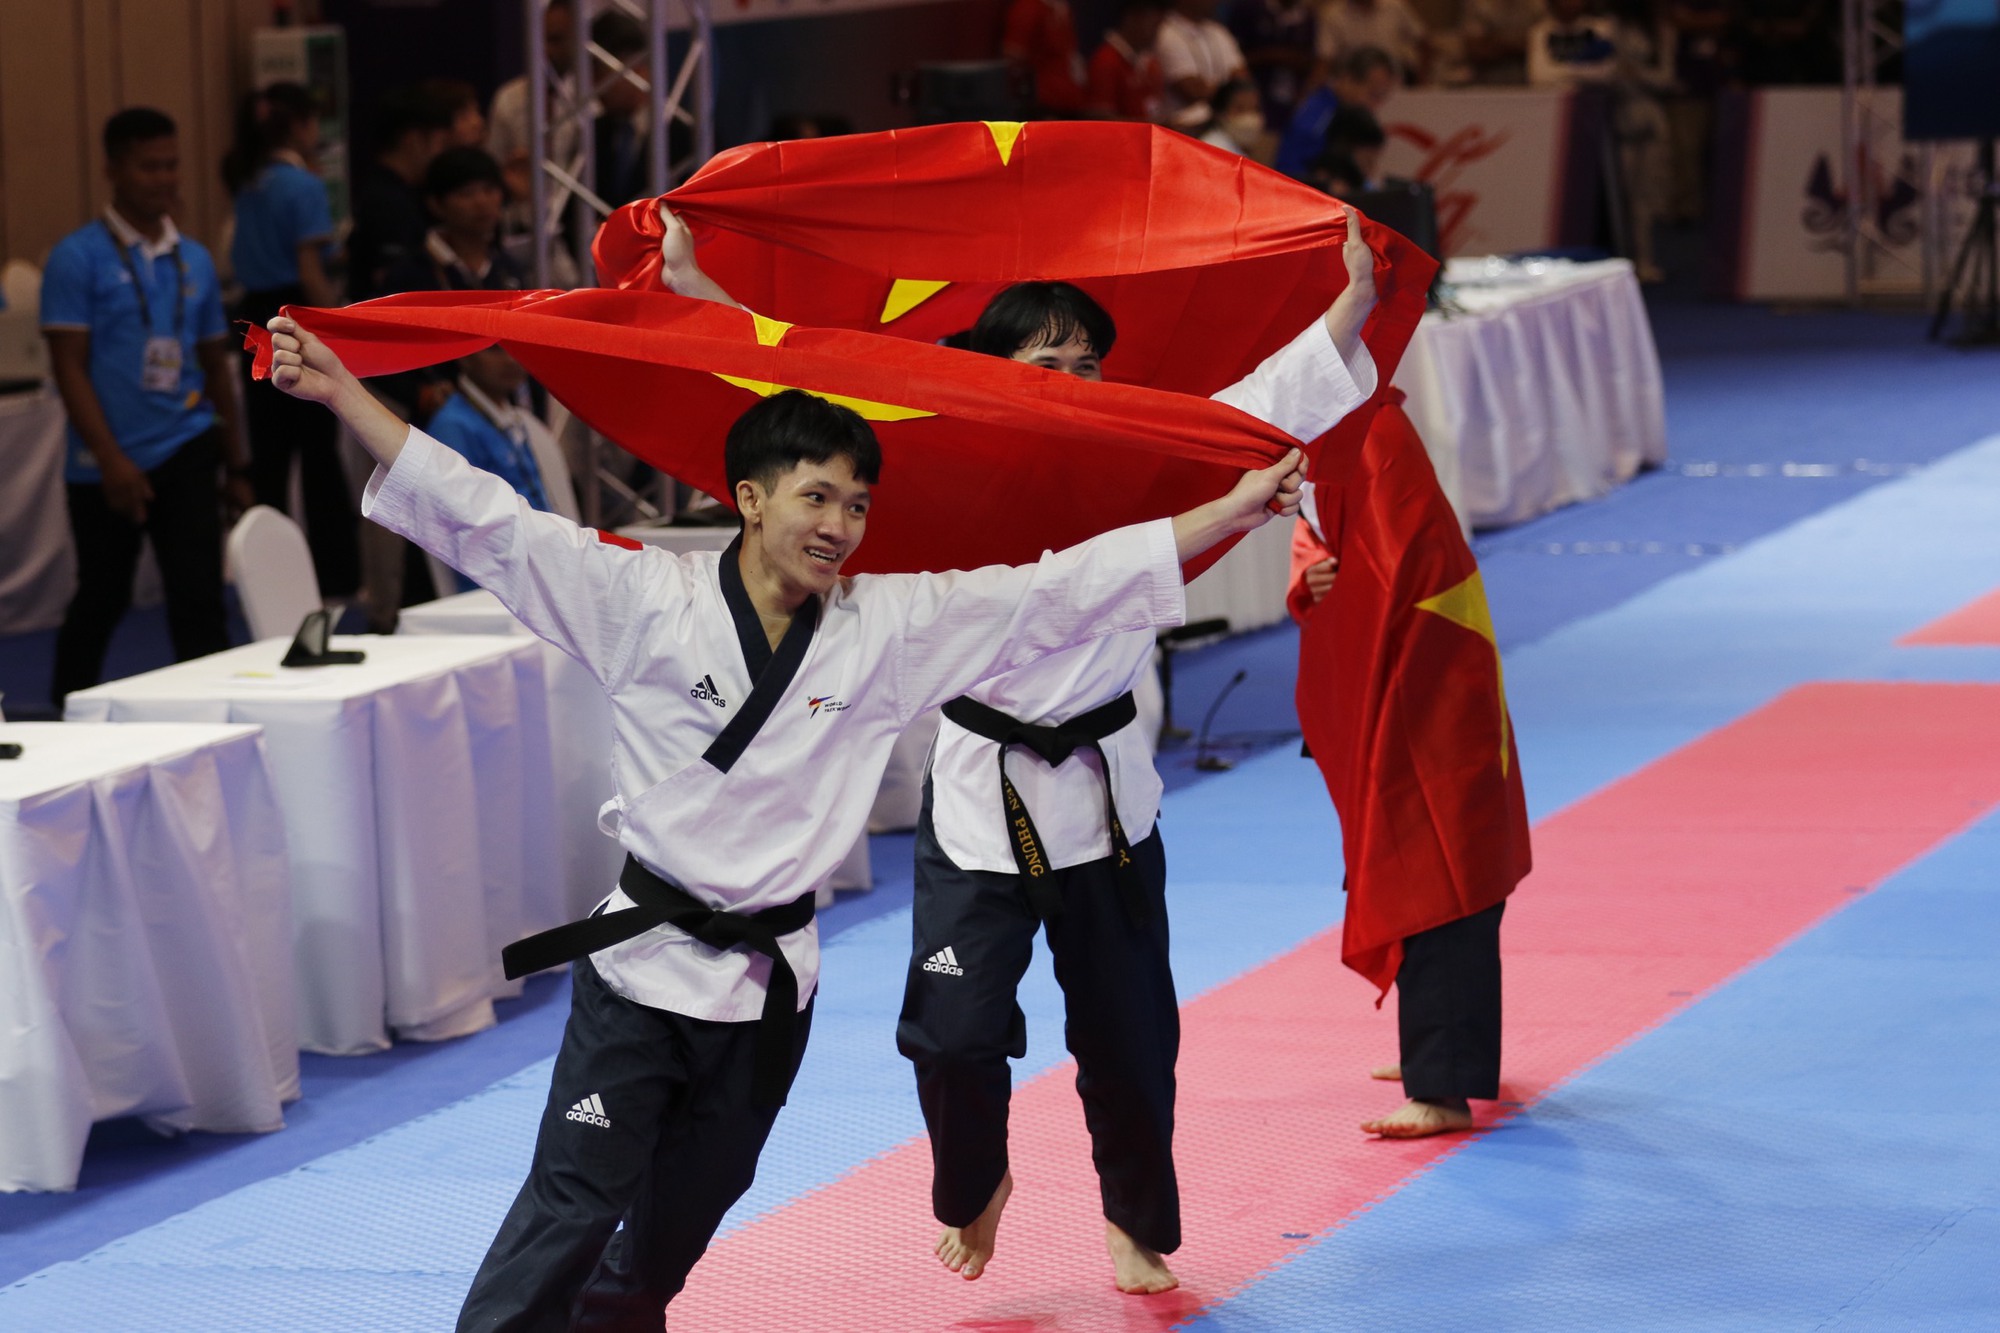 Võ sĩ giành HCV Taekwondo: ‘Đẳng cấp SEA Games cao hơn giải châu Á và Thế giới’ - Ảnh 1.